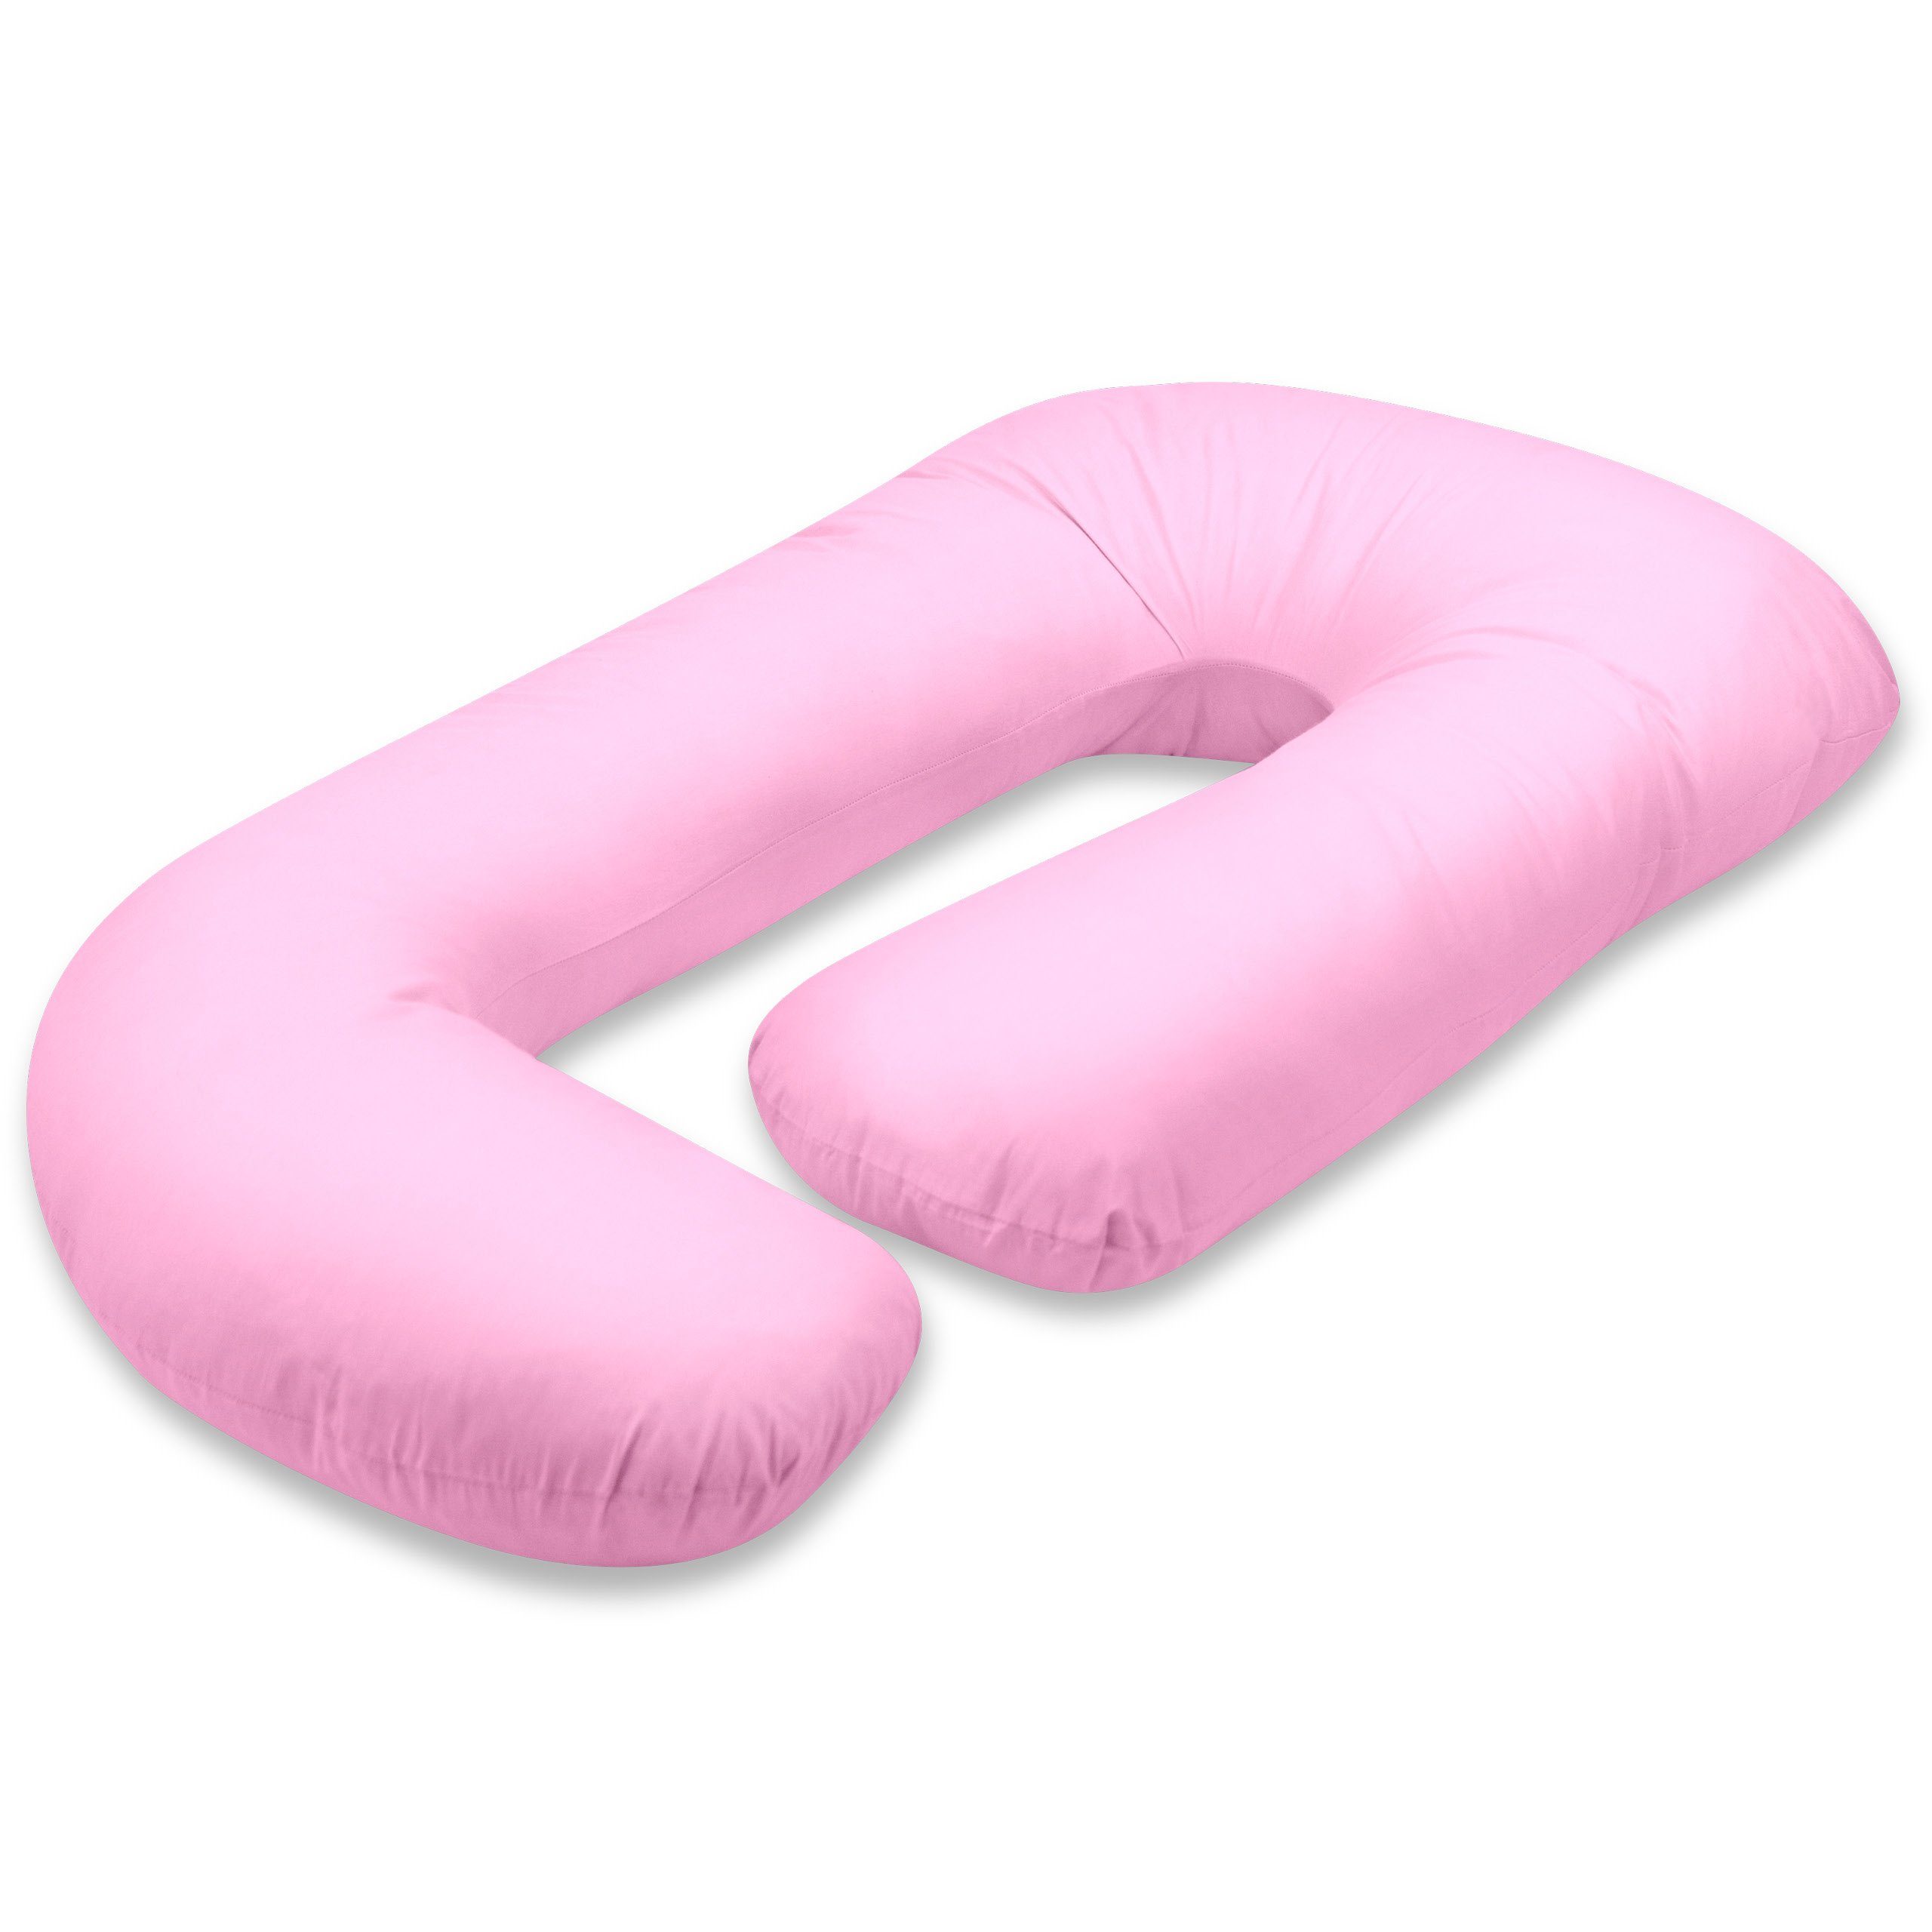 Vitabo Stillkissen Stillkissen G-Form, ergonomisches Seitenschläferkissen, 110x70 cm rosa | Stillkissen